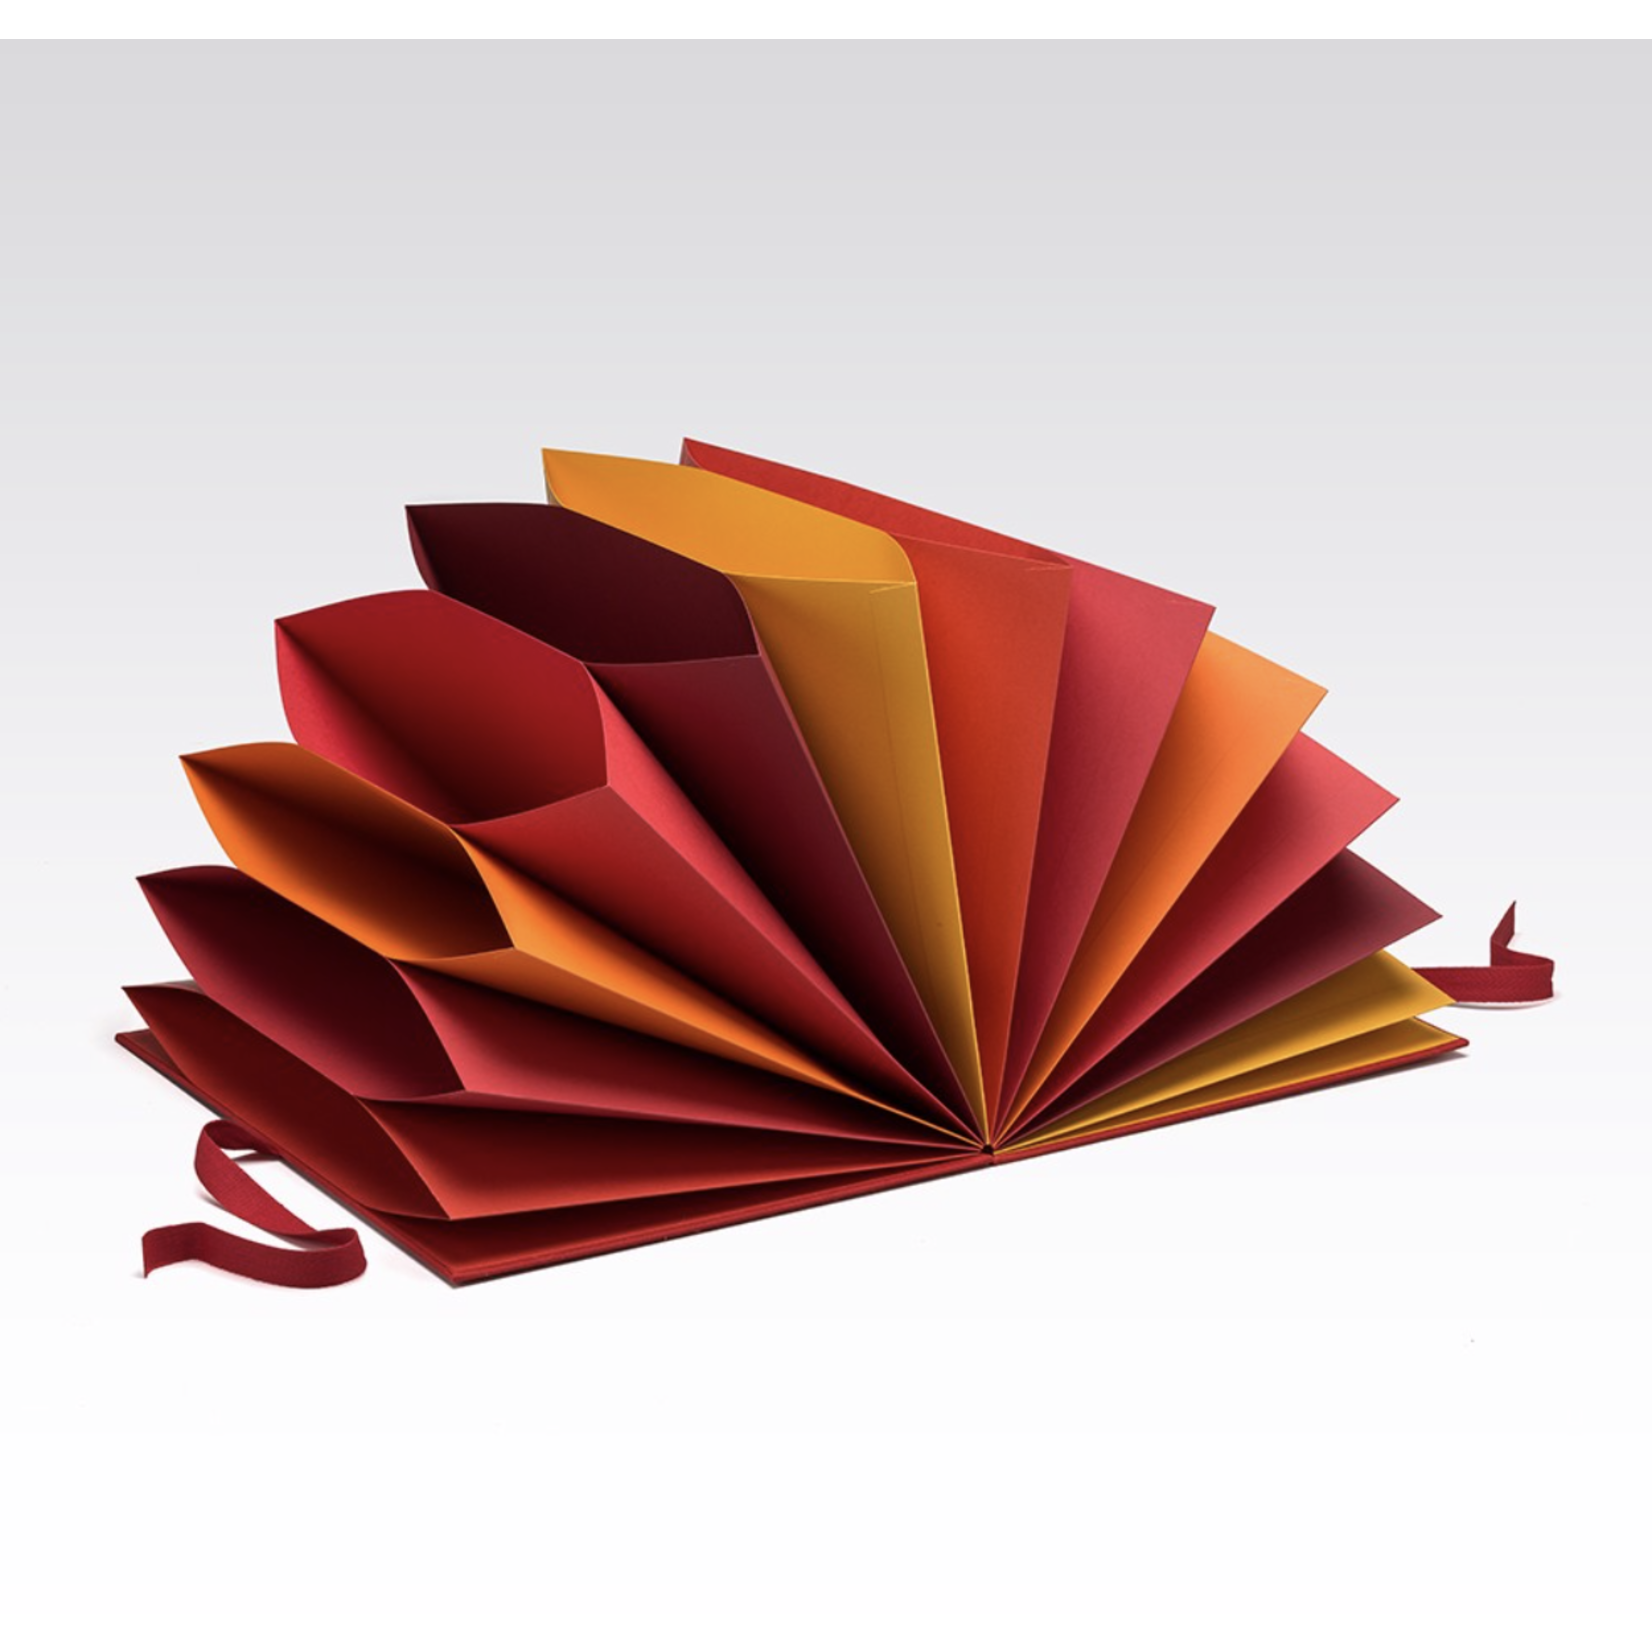 Fabriano Fabriano Multicolored Folder - Red